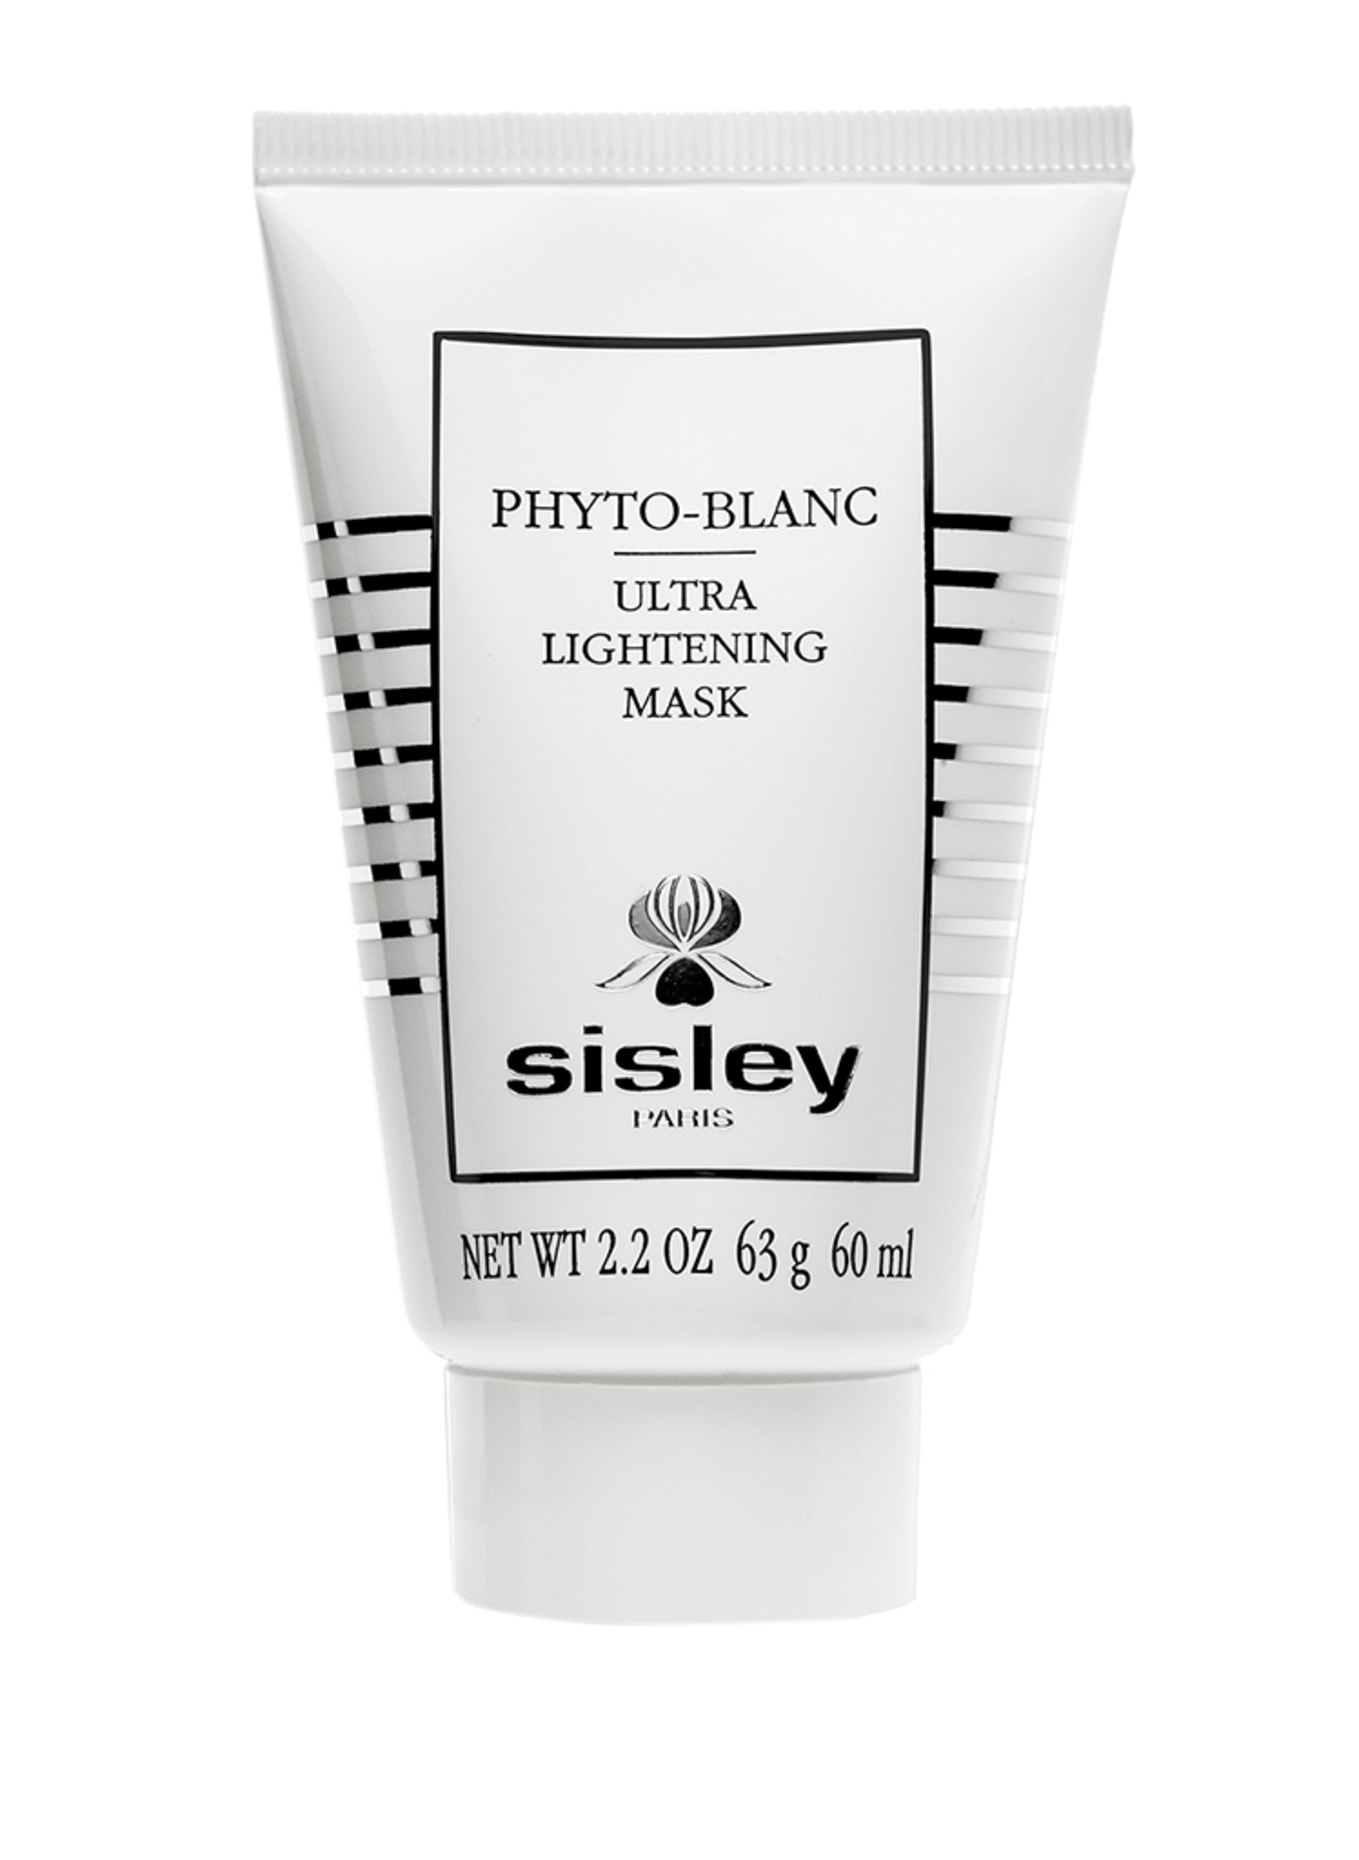 sisley Paris PHYTO-BLANC ULTRA LIGHTENING MASK (Bild 1)